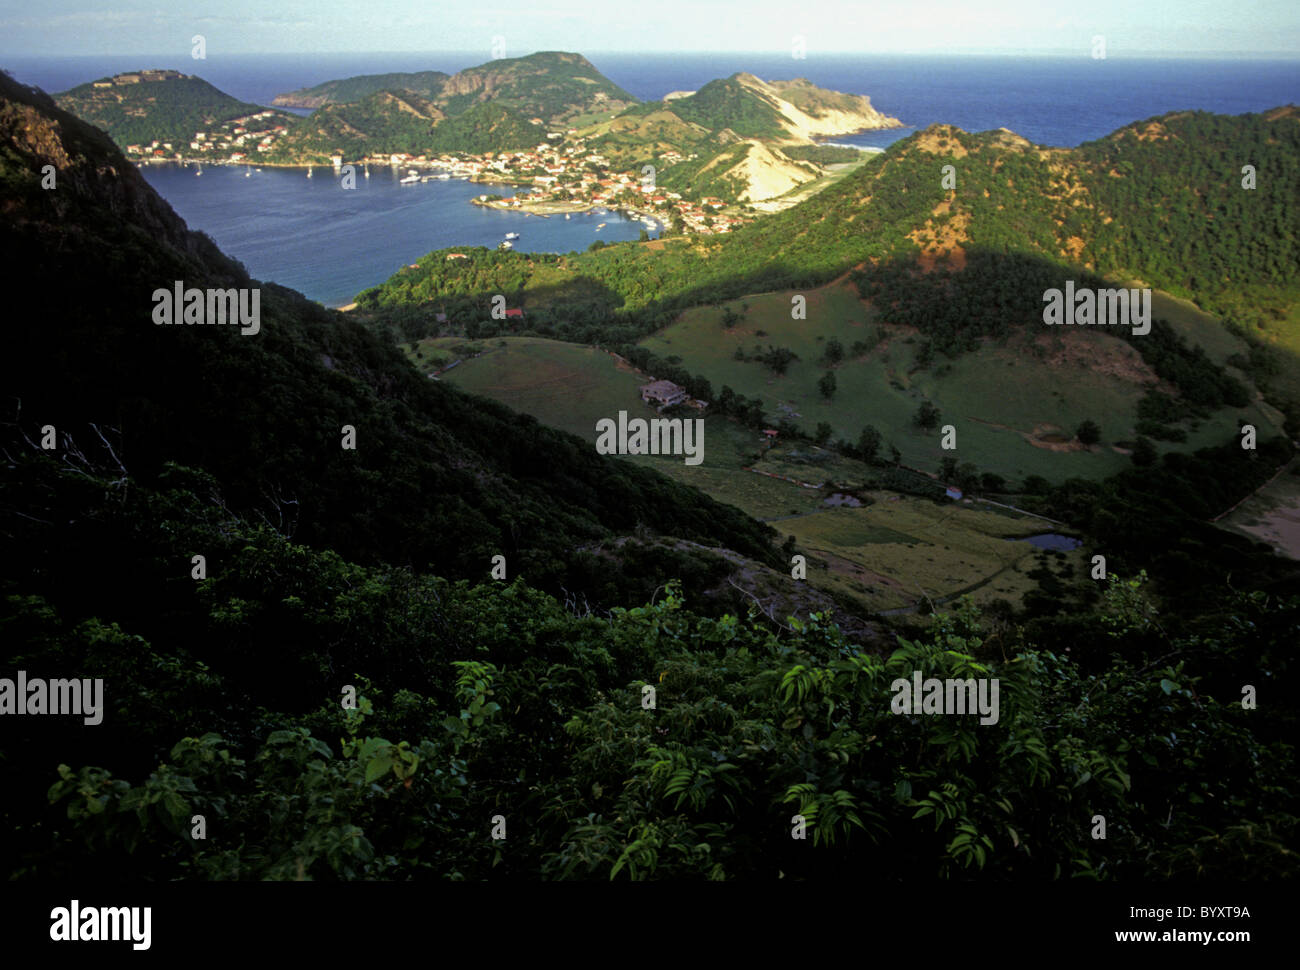 overview, harbor, port, town, Le Bourg, Terre-de-Haut des Saintes, Les Saintes, Guadeloupe, French West Indies Stock Photo